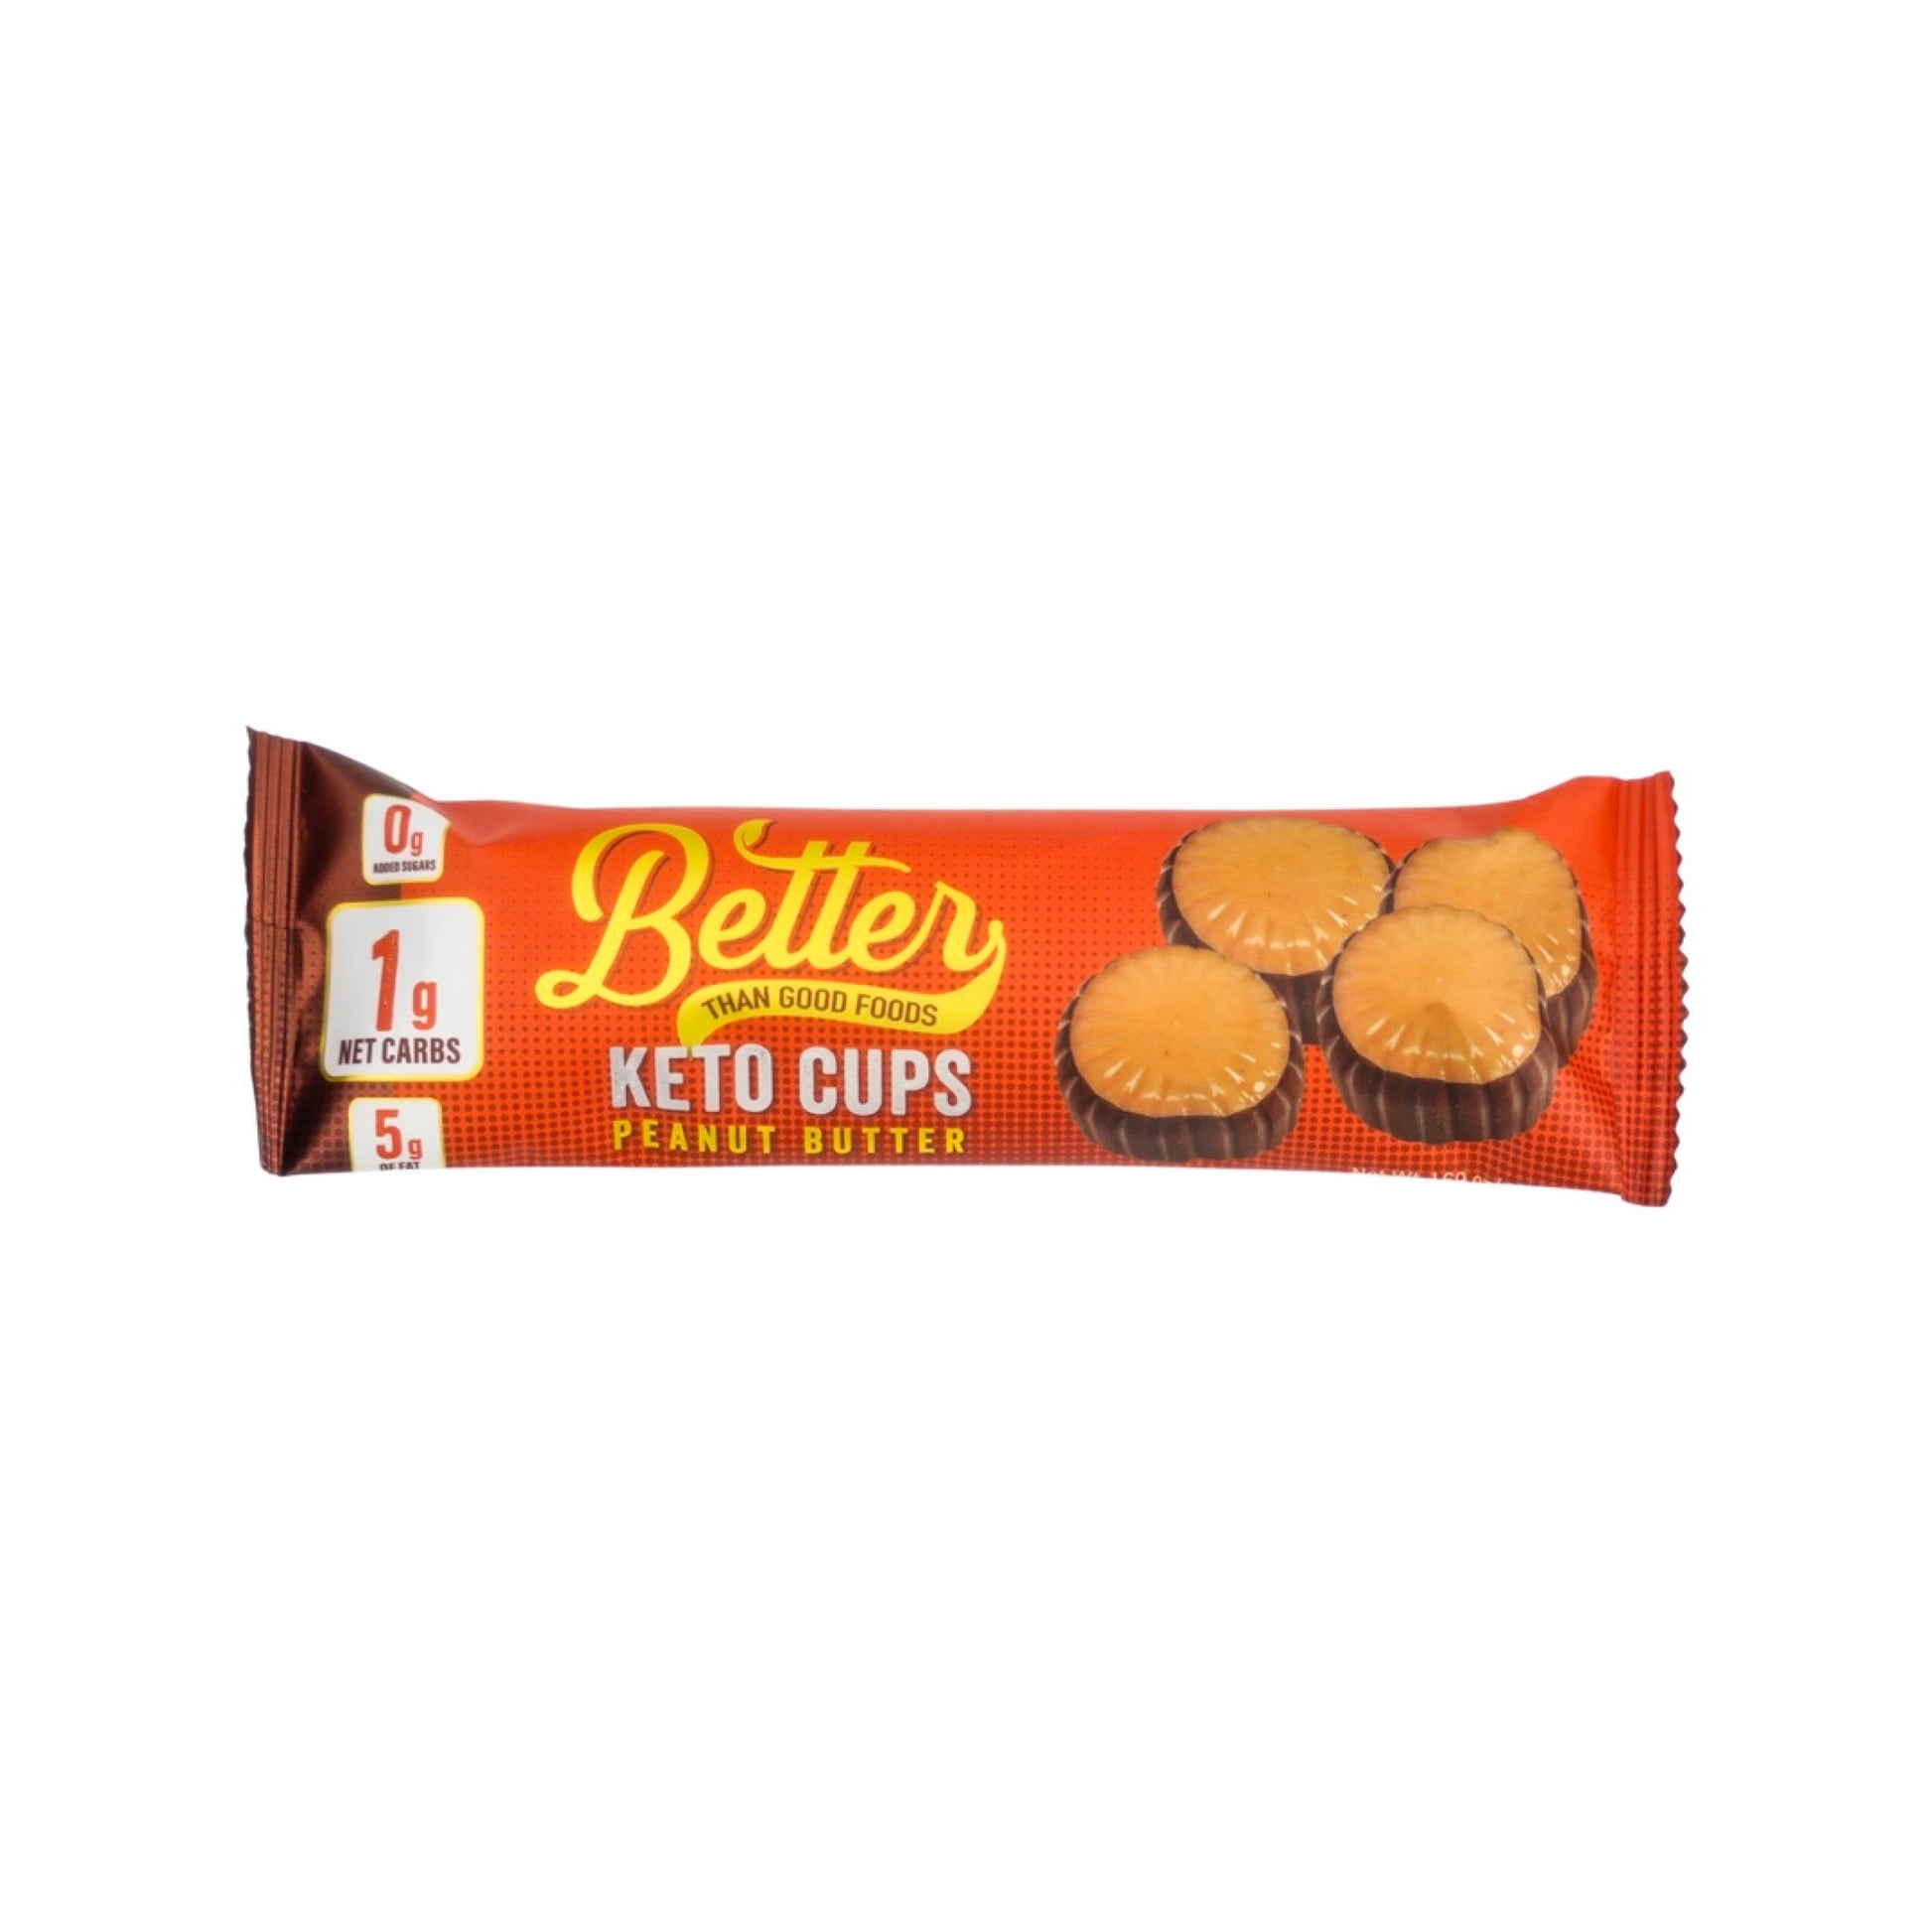 Peanut Butter Keto Cups 6pk – Better Than Good Foods